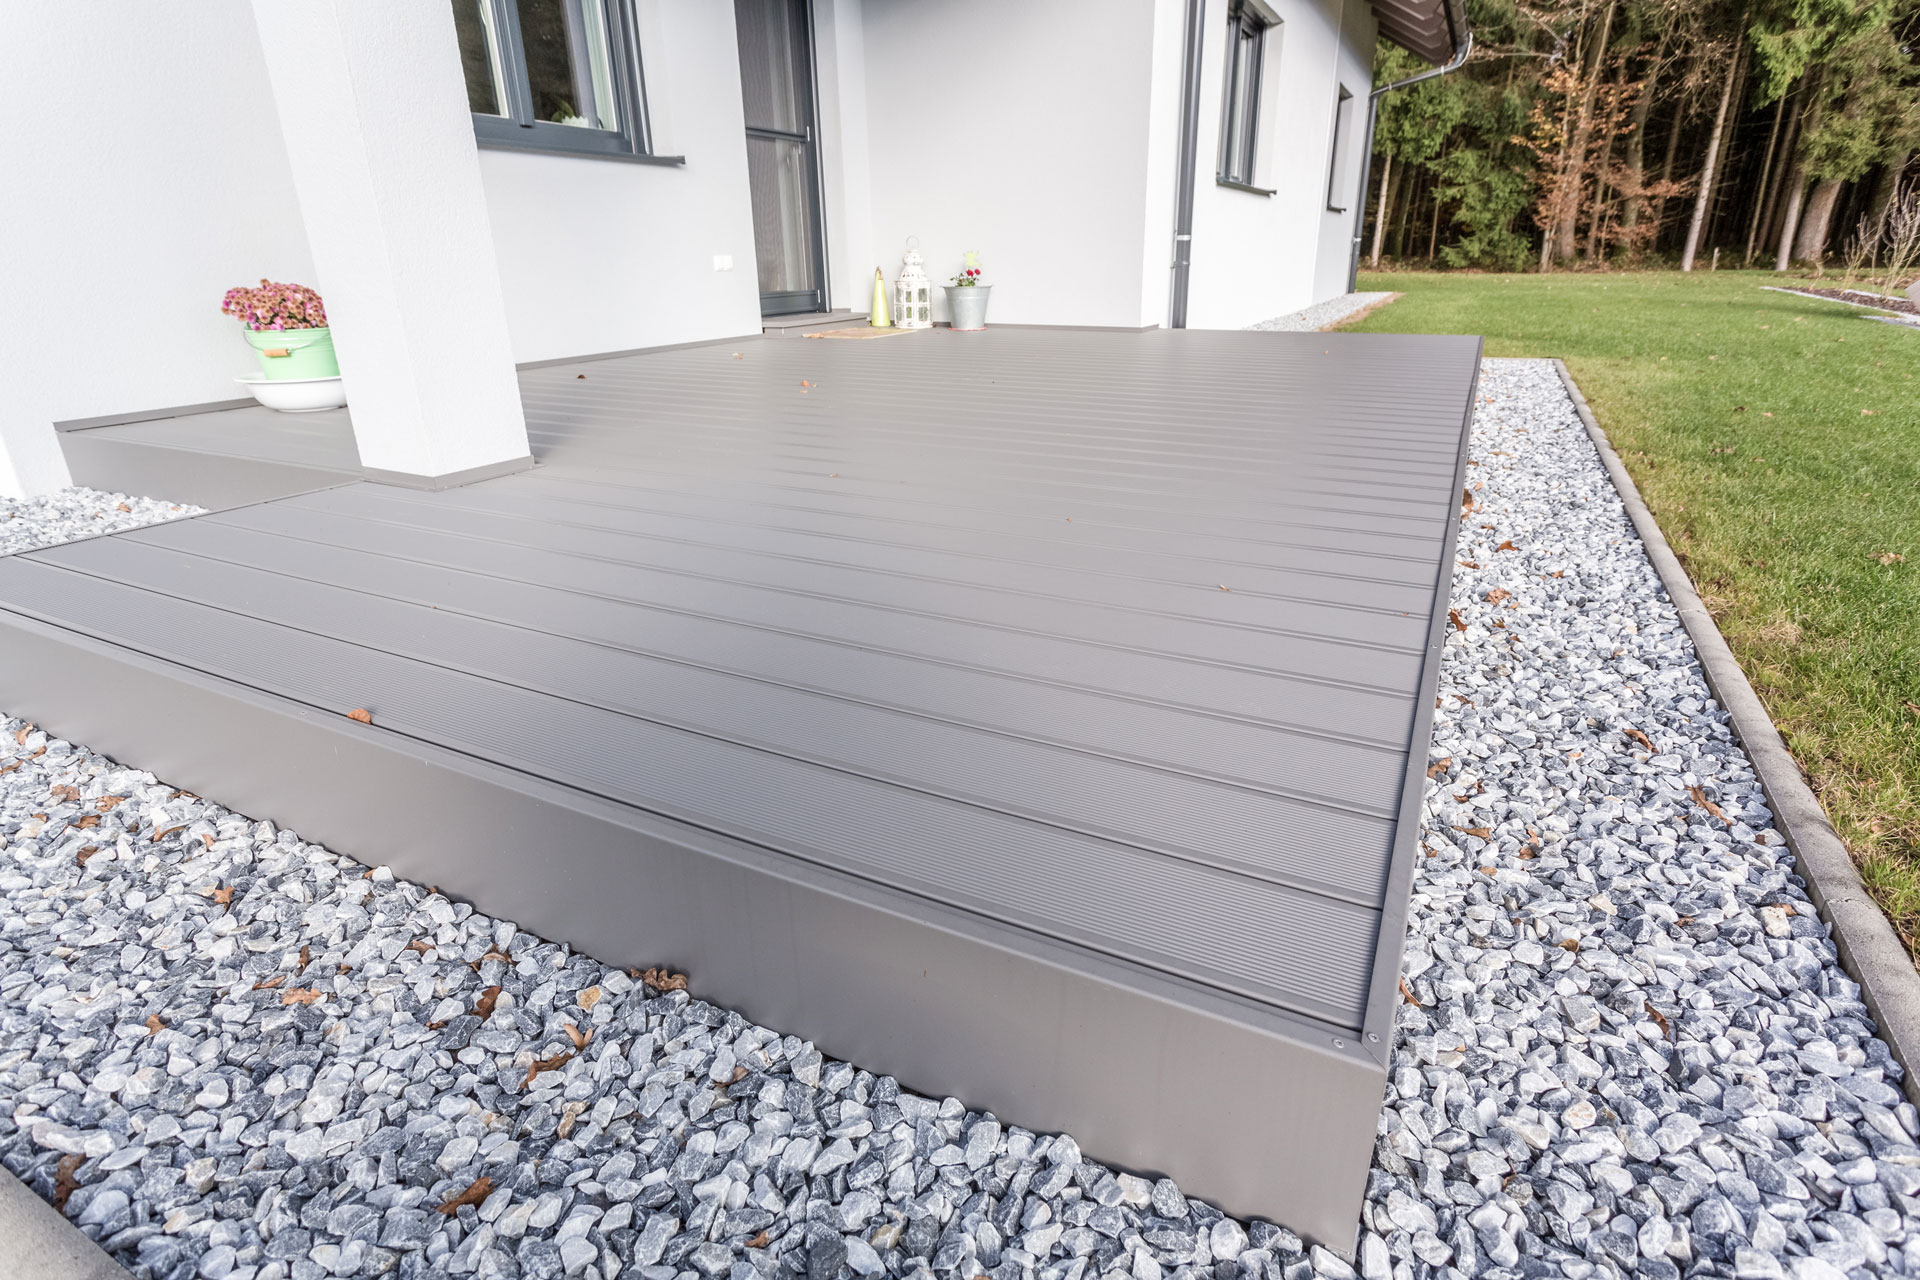 B Alu 16 | Terrassenboden mit Unterkonstruktion aus Metall und grauem Alu-Bodenbelag | Svoboda